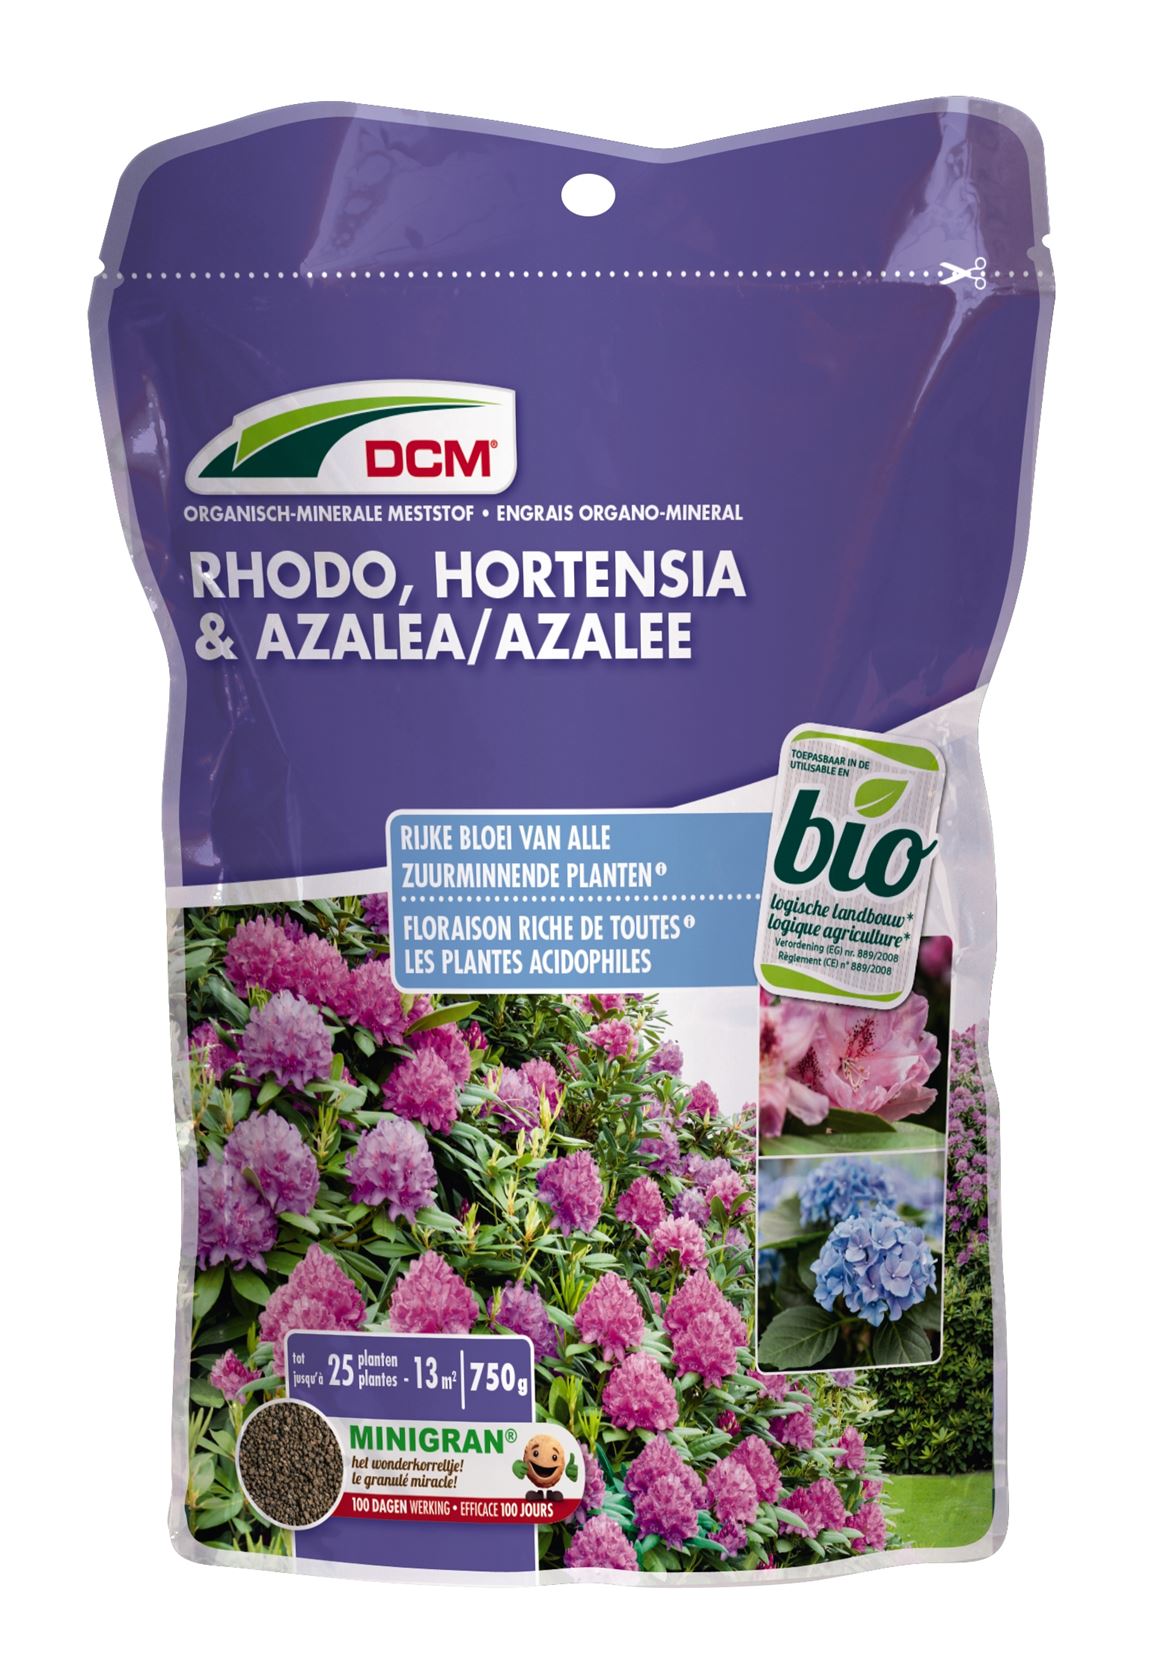 Meststof-rhododendron-hortensia-azalea-0-75kg-Bio-NPK-5-3-6-2MgO-FE-zuurminnende-planten-